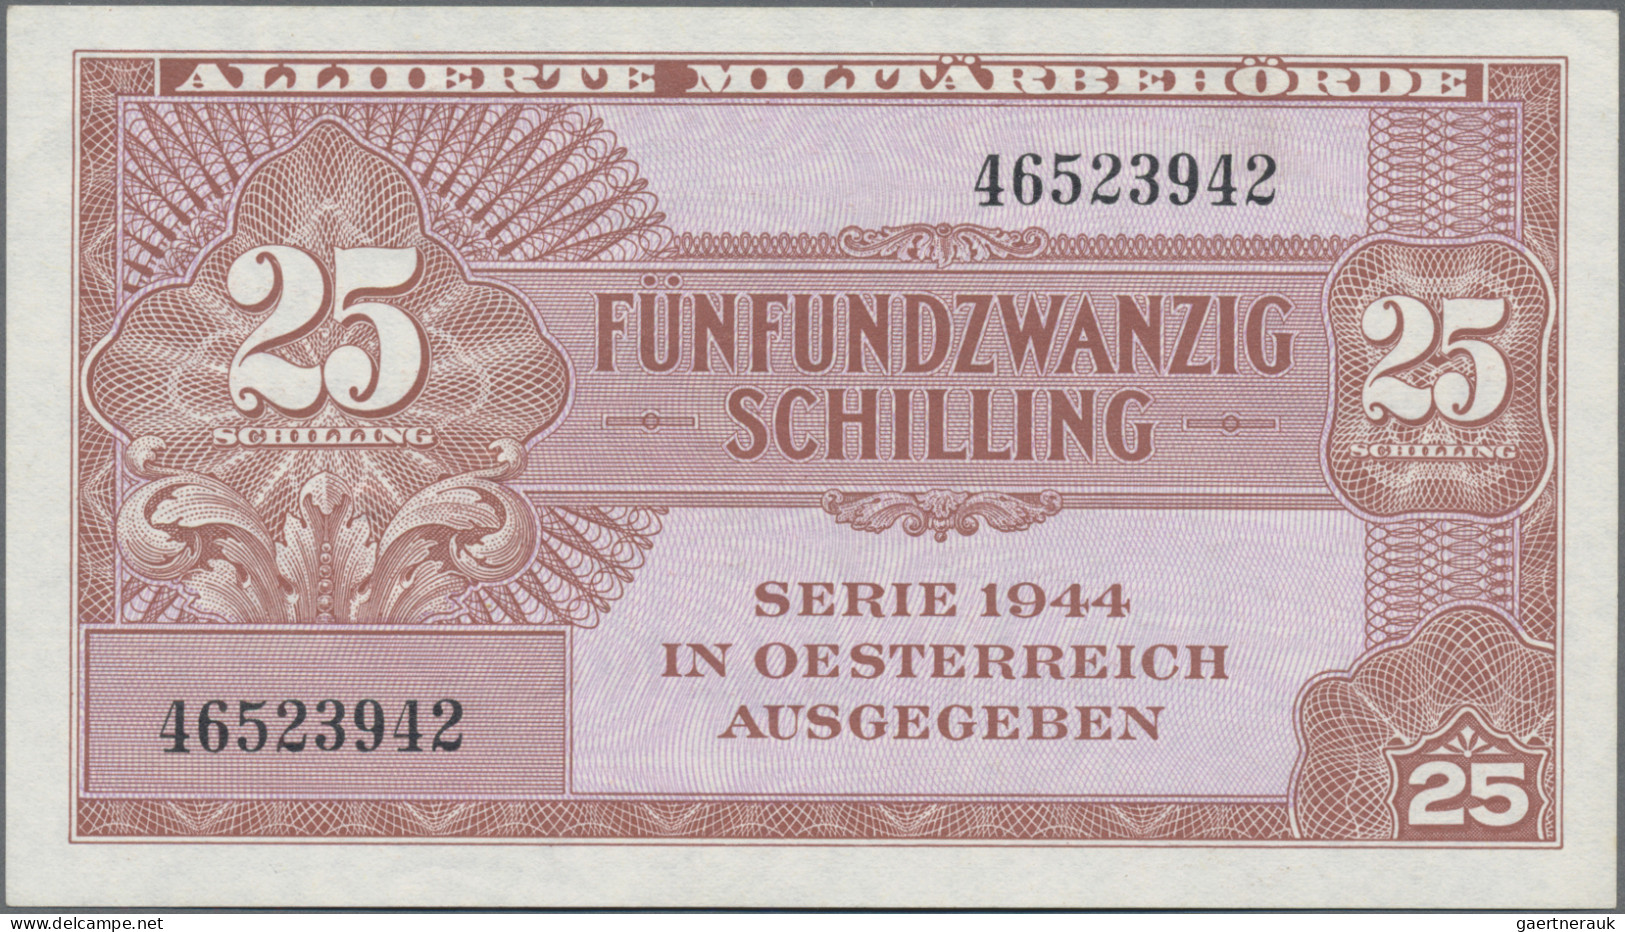 Austria: Alliierte Militärbehörde, Serie 1944, Pair With 25 Schilling (P.108a, T - Austria